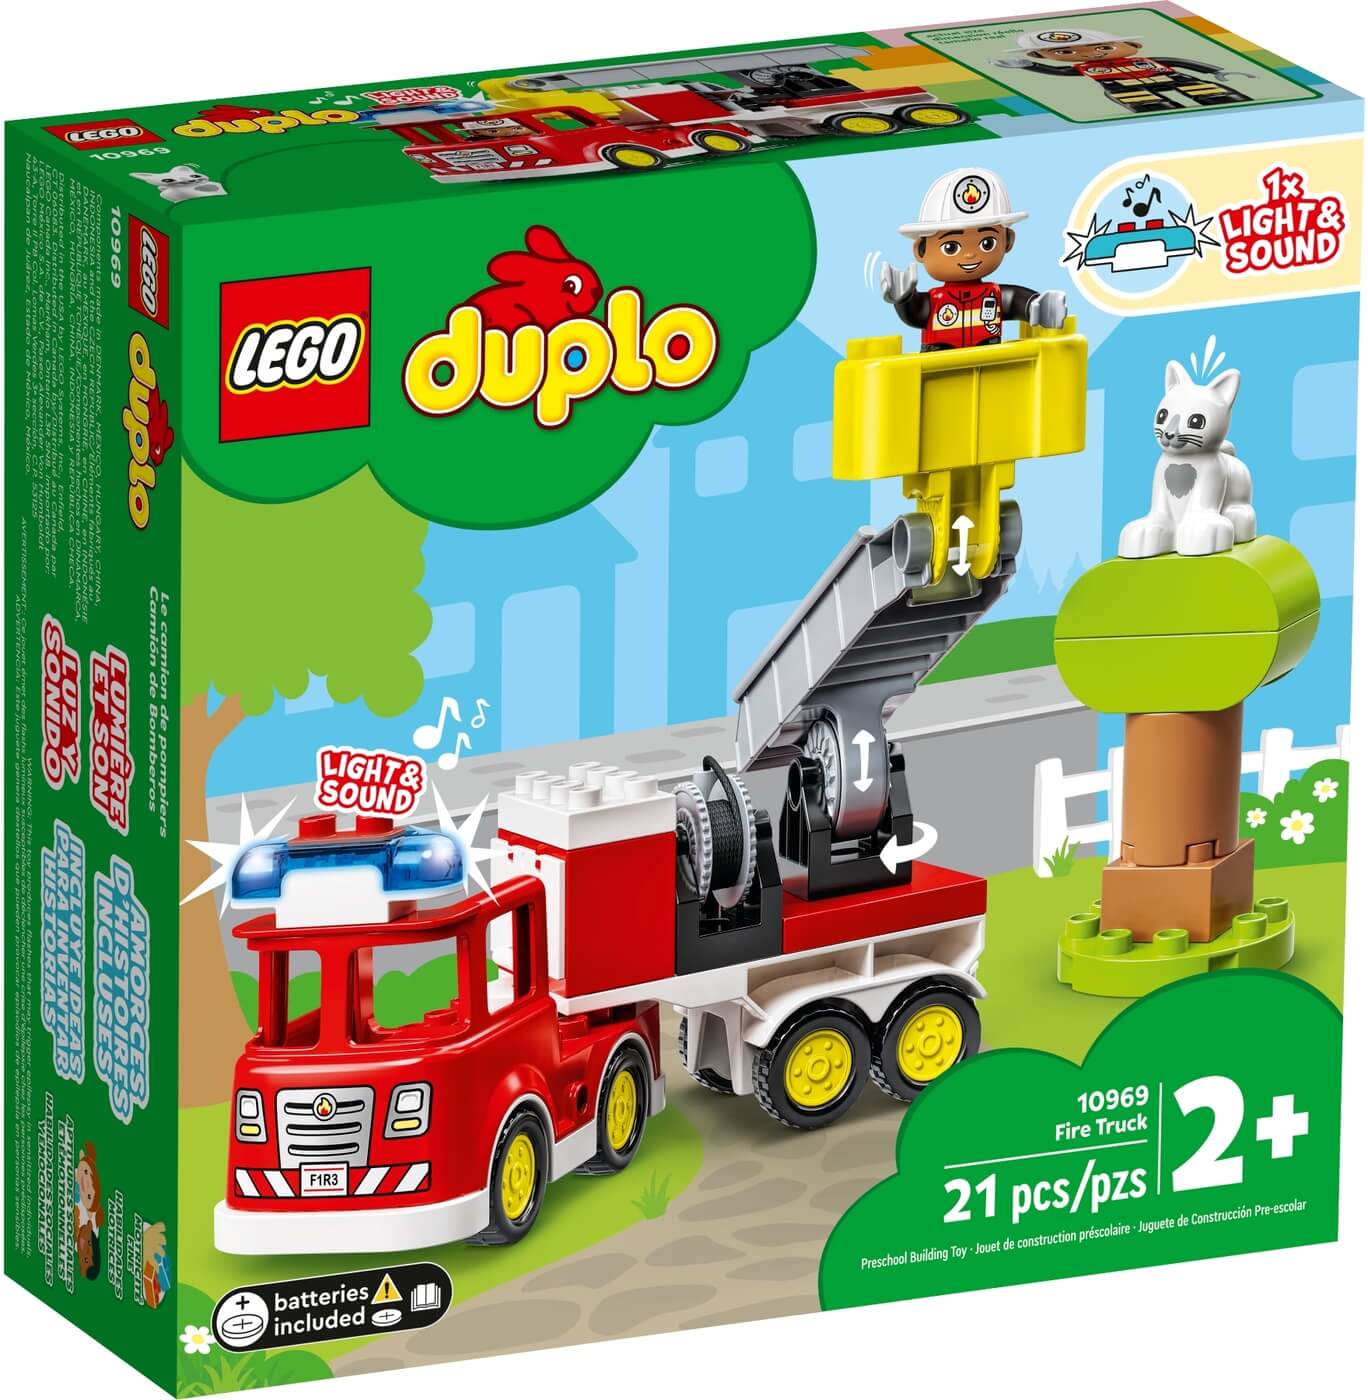 Camion de Bomberos Duplo ( Lego 10969 ) imagen e